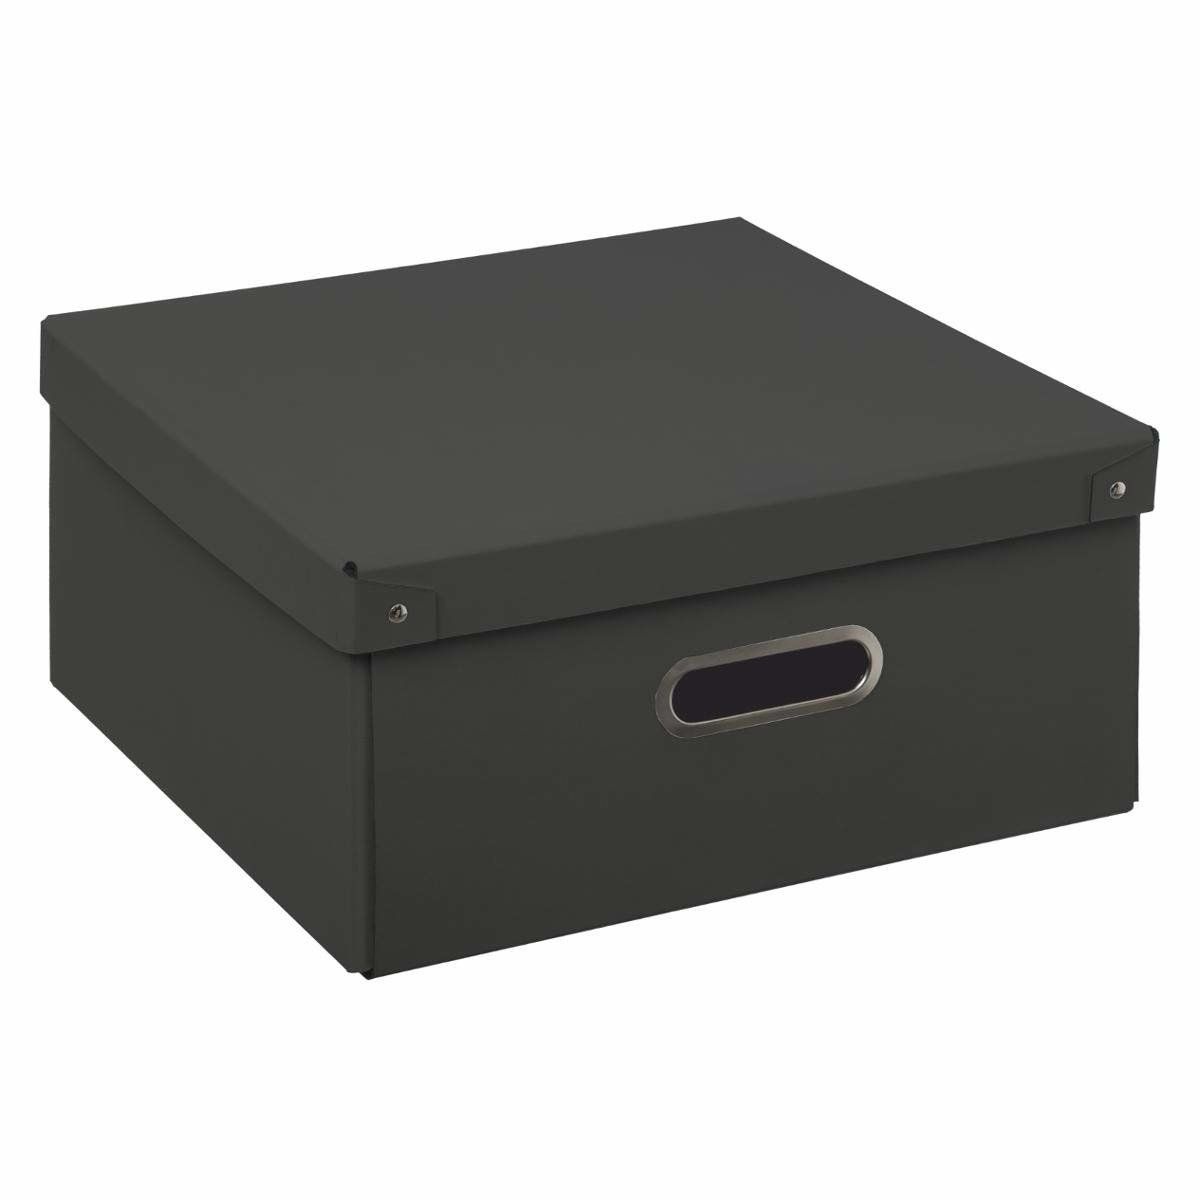 5five Simple Smart Kartonová krabice s víkem, skladovací krabice, 31 x 15 cm, černá - EMAKO.CZ s.r.o.